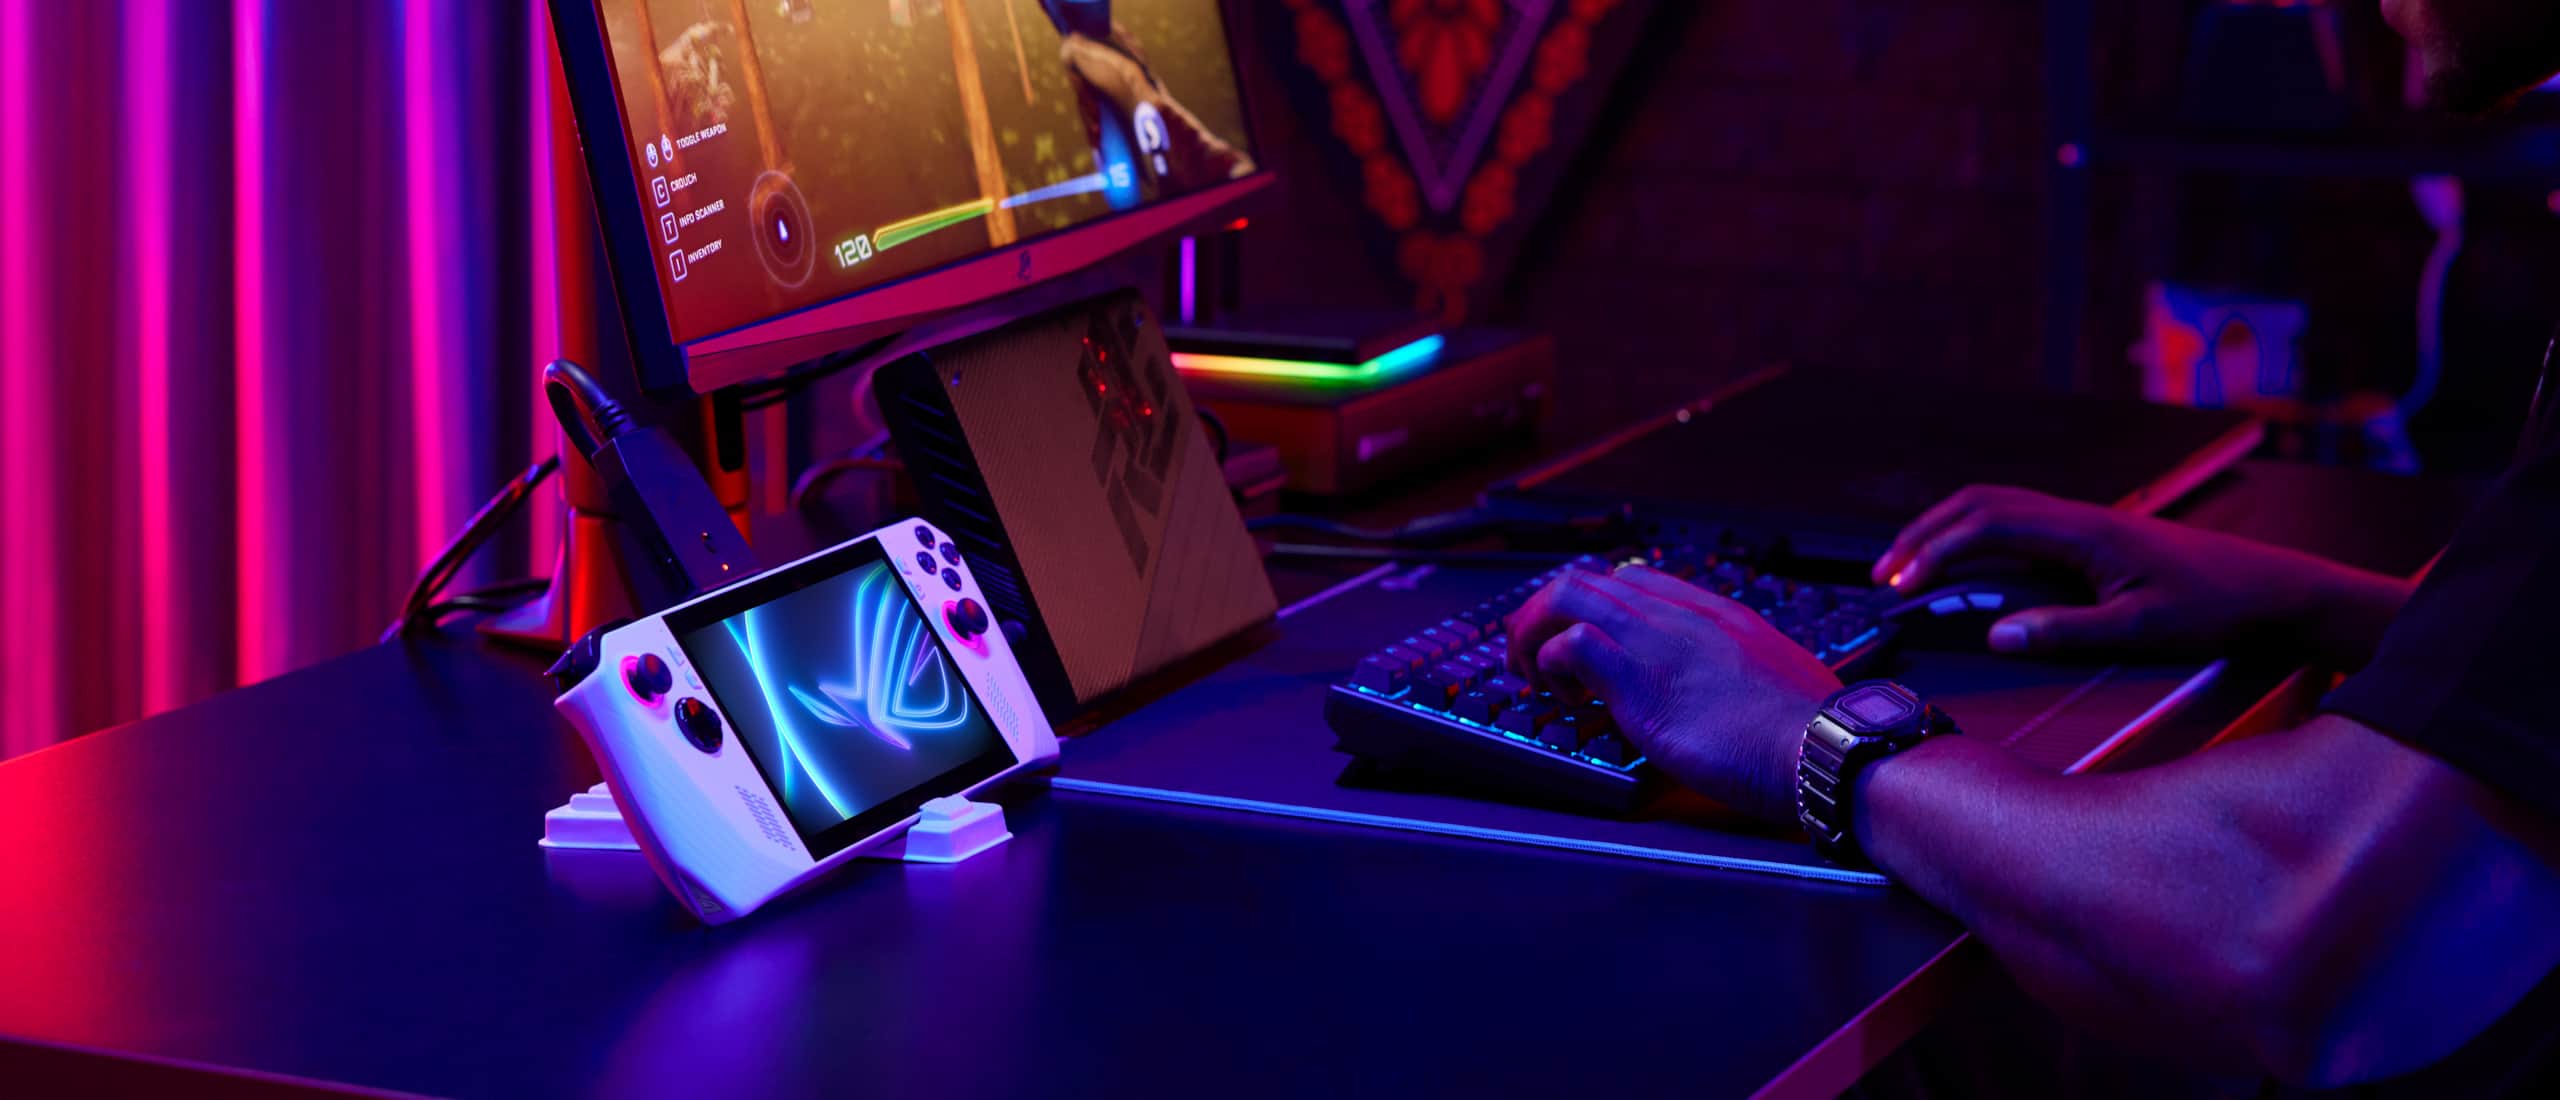 坐在桌子前使用鍵盤、滑鼠和外接顯示器並將 Ally 連接到XG Mobile的人，正在玩電競遊戲。